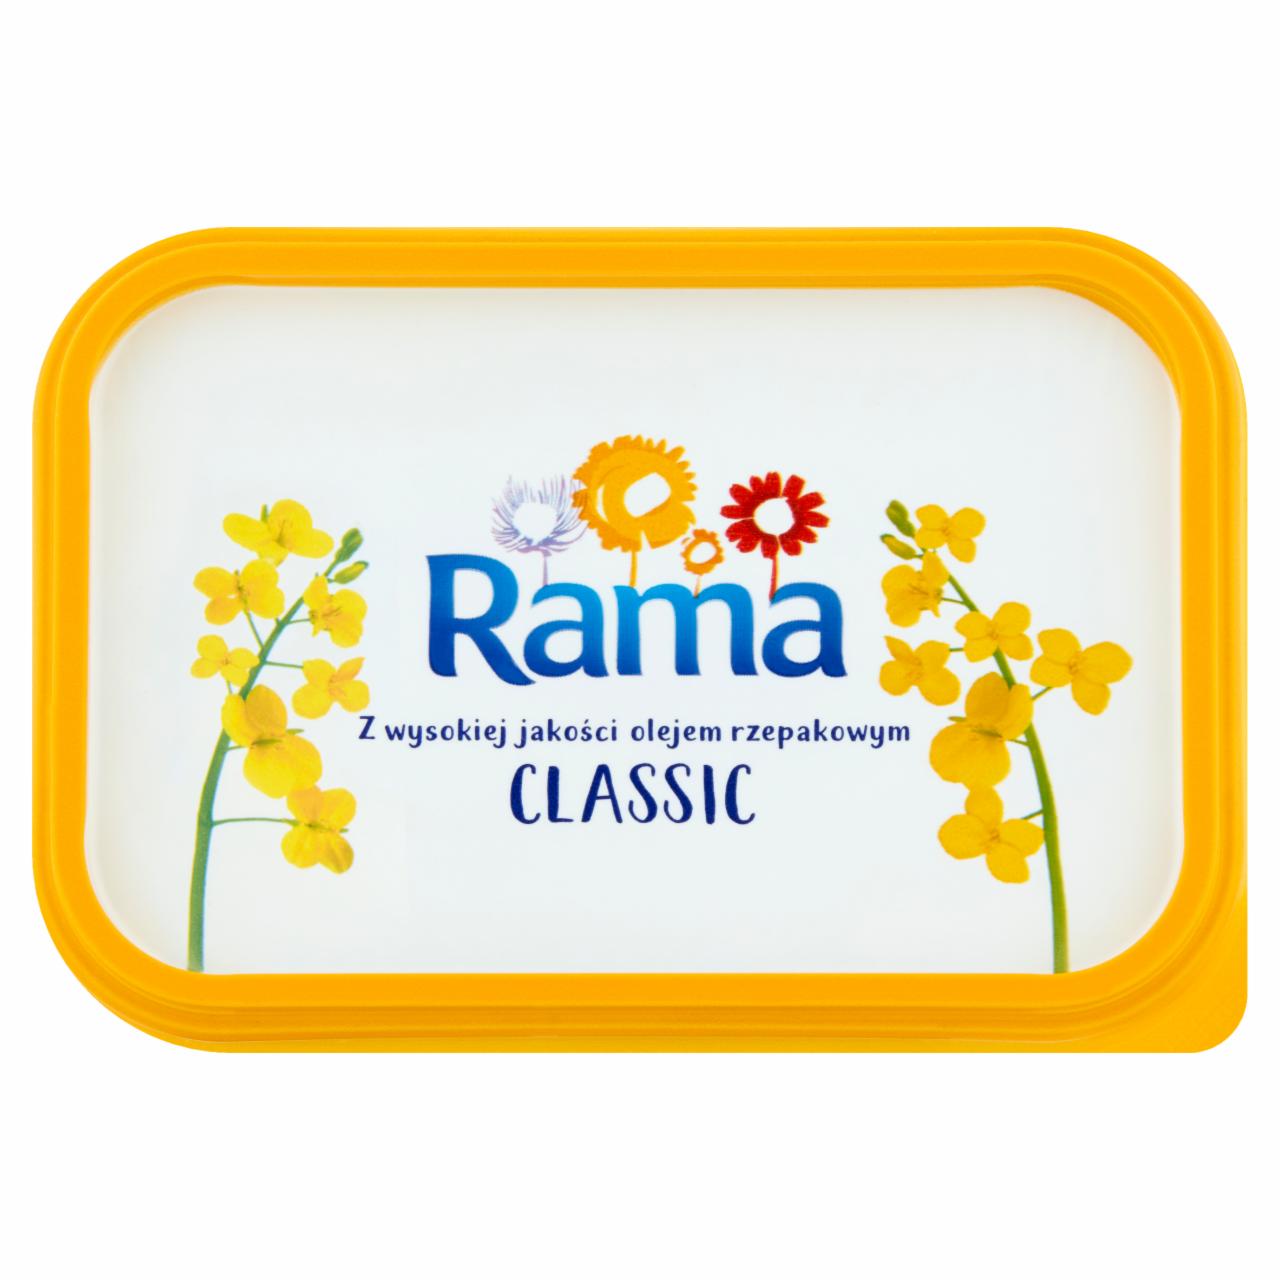 Zdjęcia - Rama Classic Margaryna 250 g